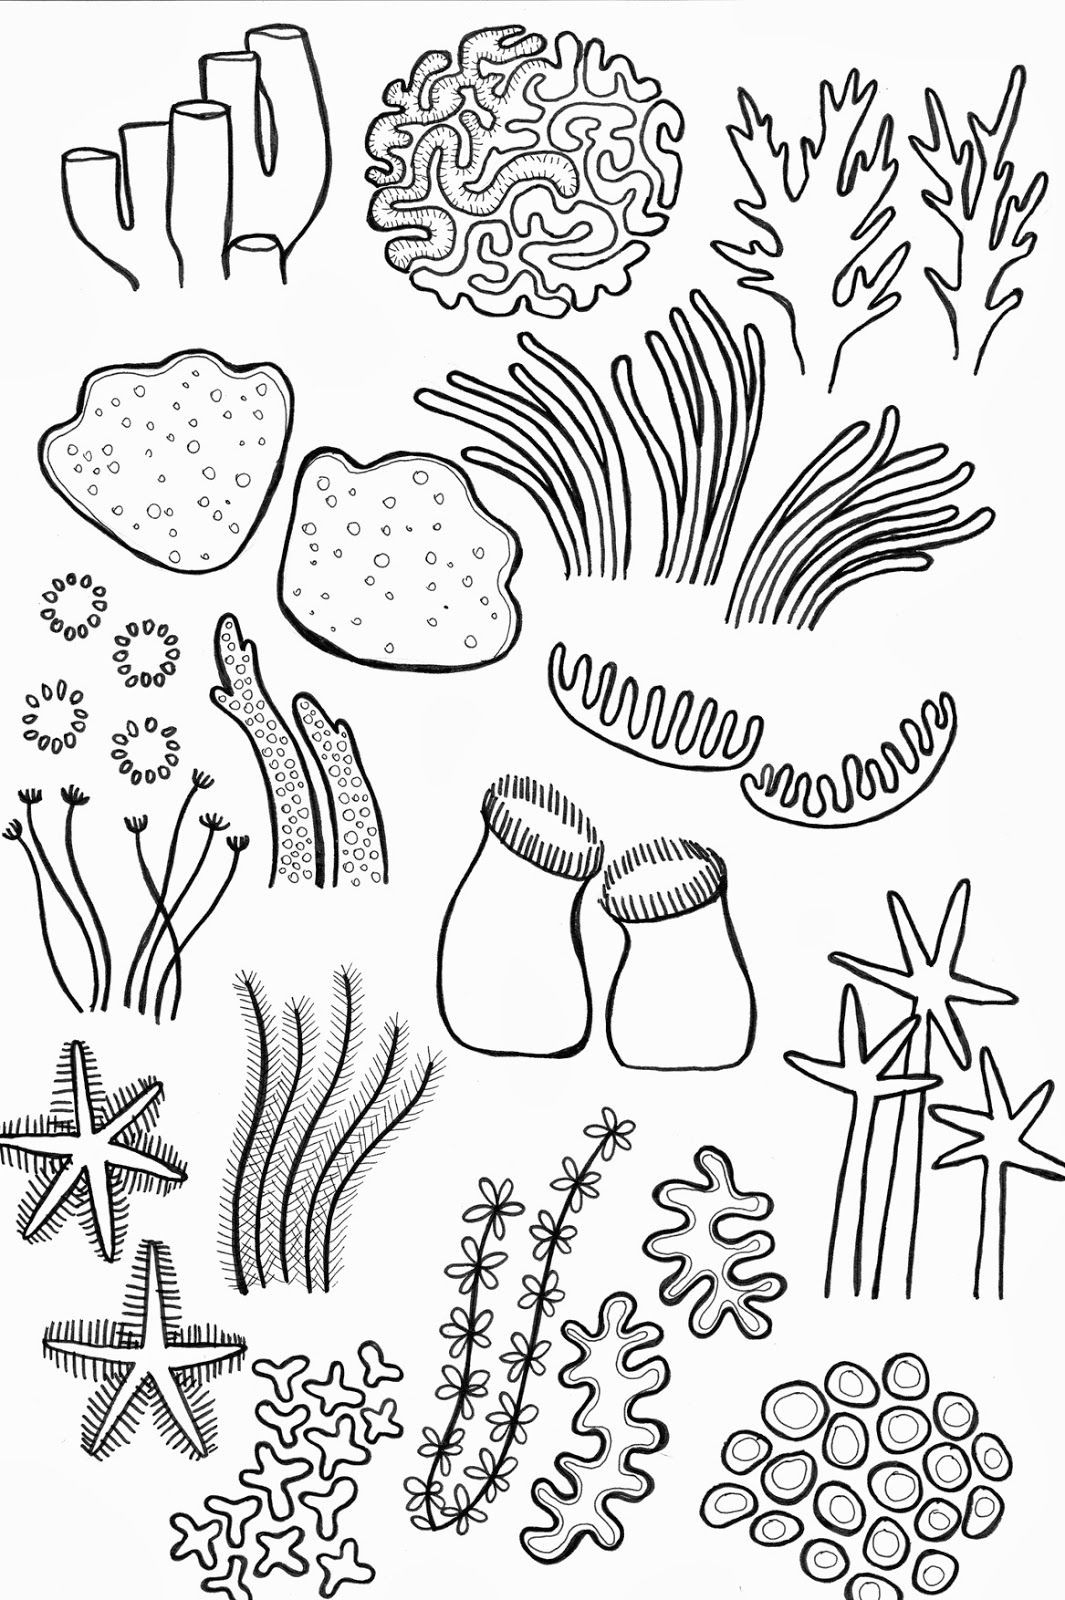 Underwater Drawing Ideas Drawing Underwater Coral Reef Coral Reef Pinterest Coral Reef